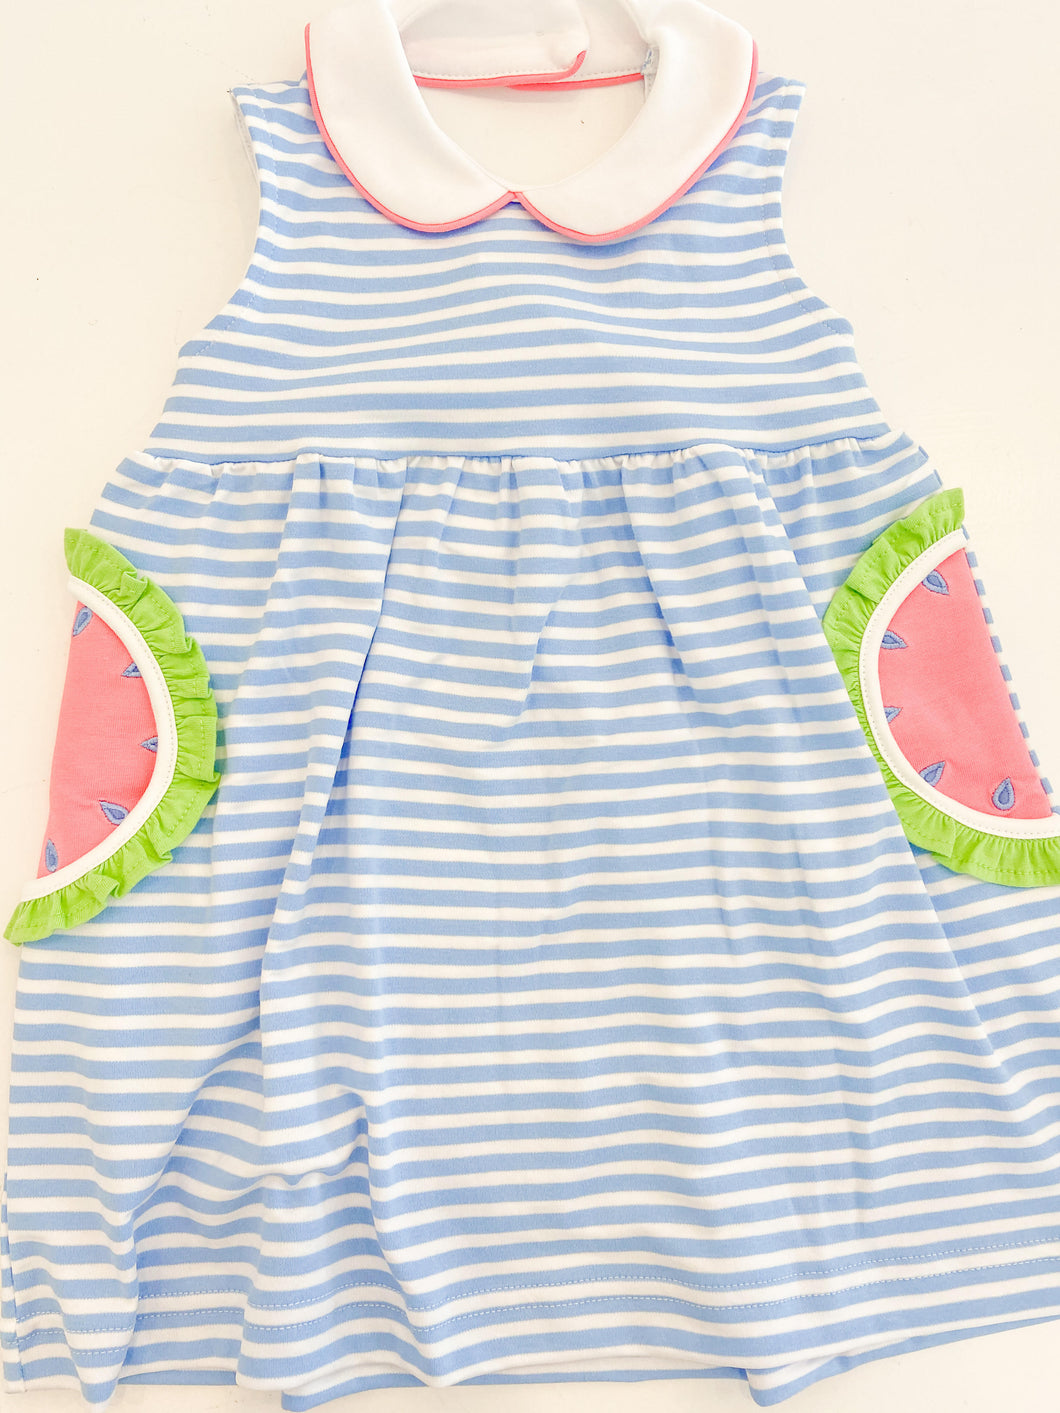 Stripe Knit Dress with Watermelon Pockets